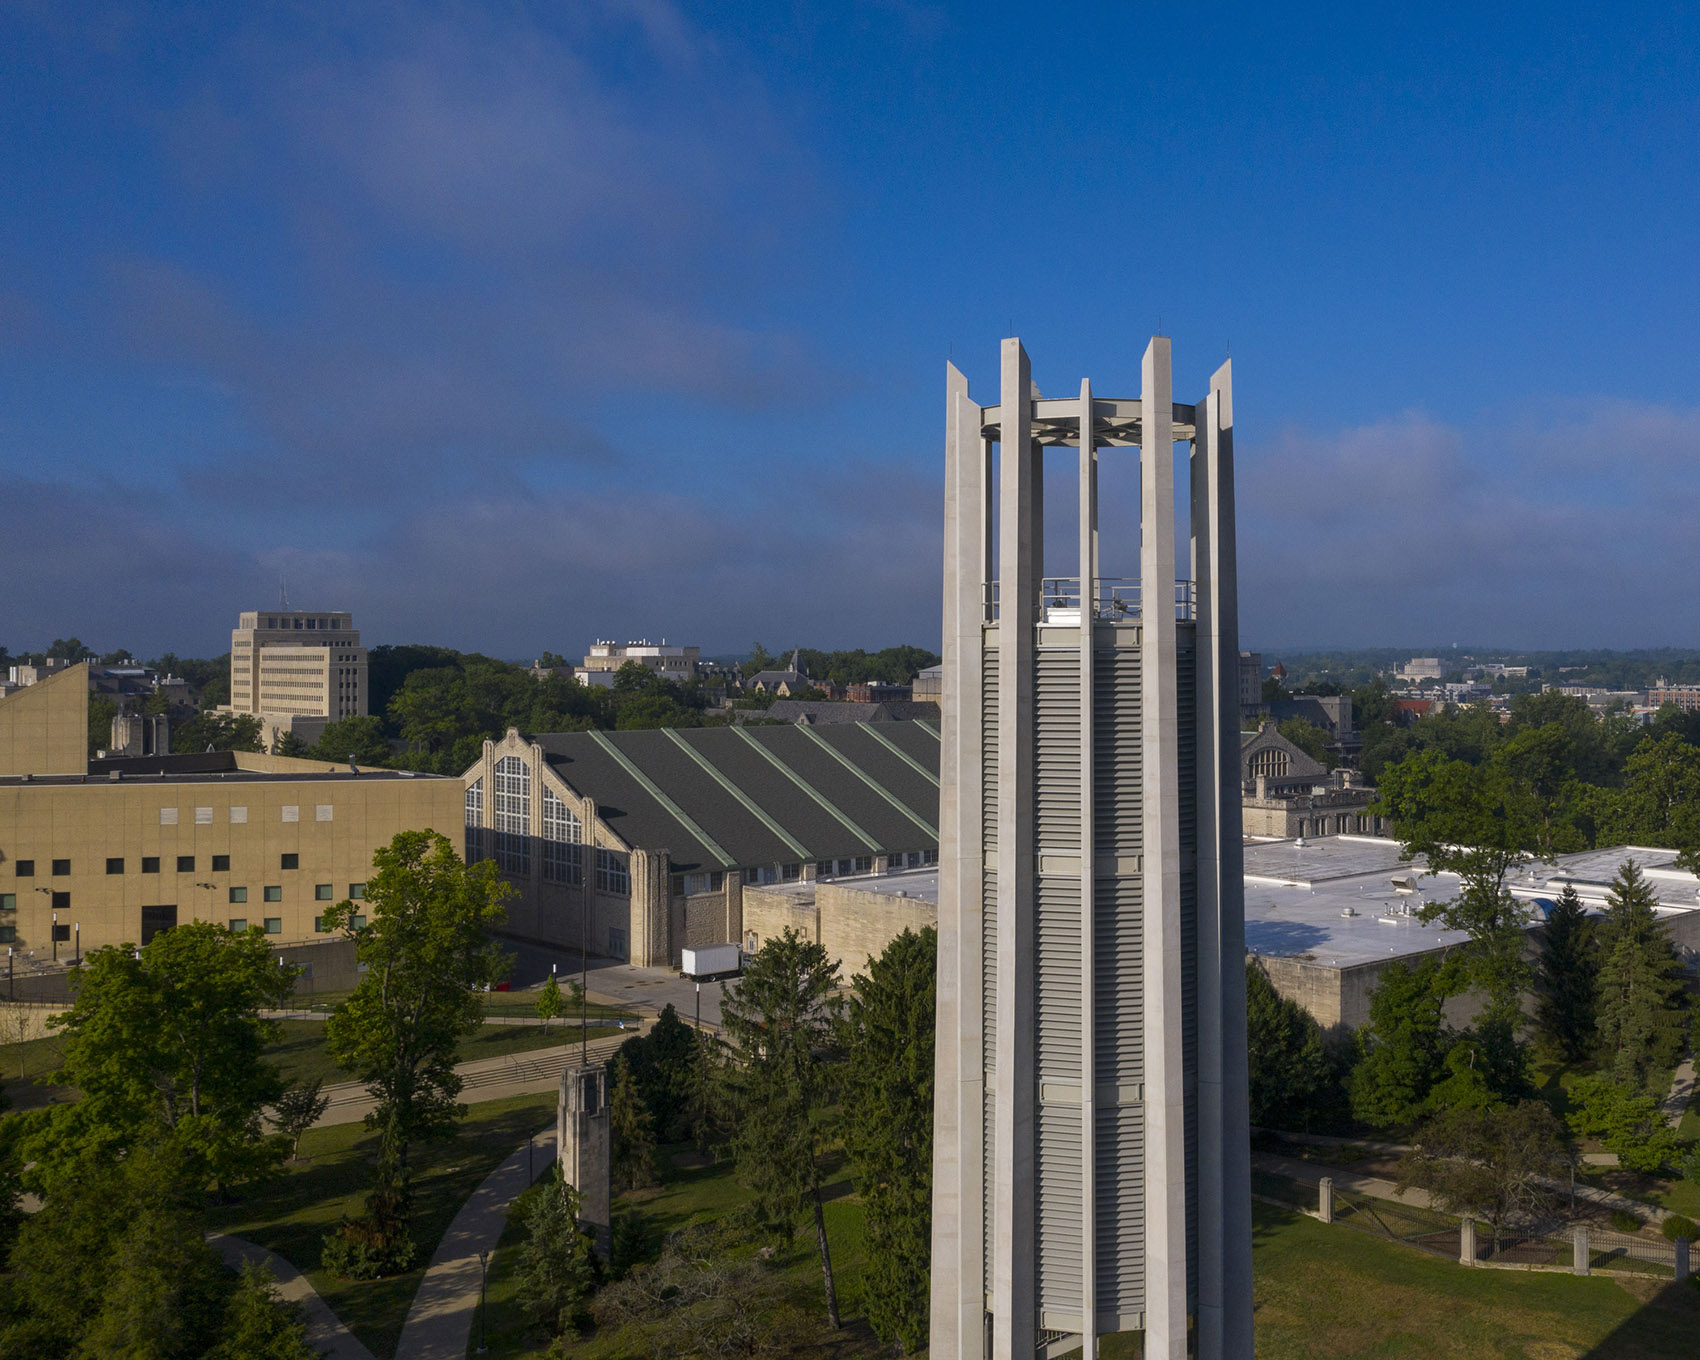 印第安纳大学钟琴塔，美国/印第安纳大学两百周年校庆的纪念钟塔-5